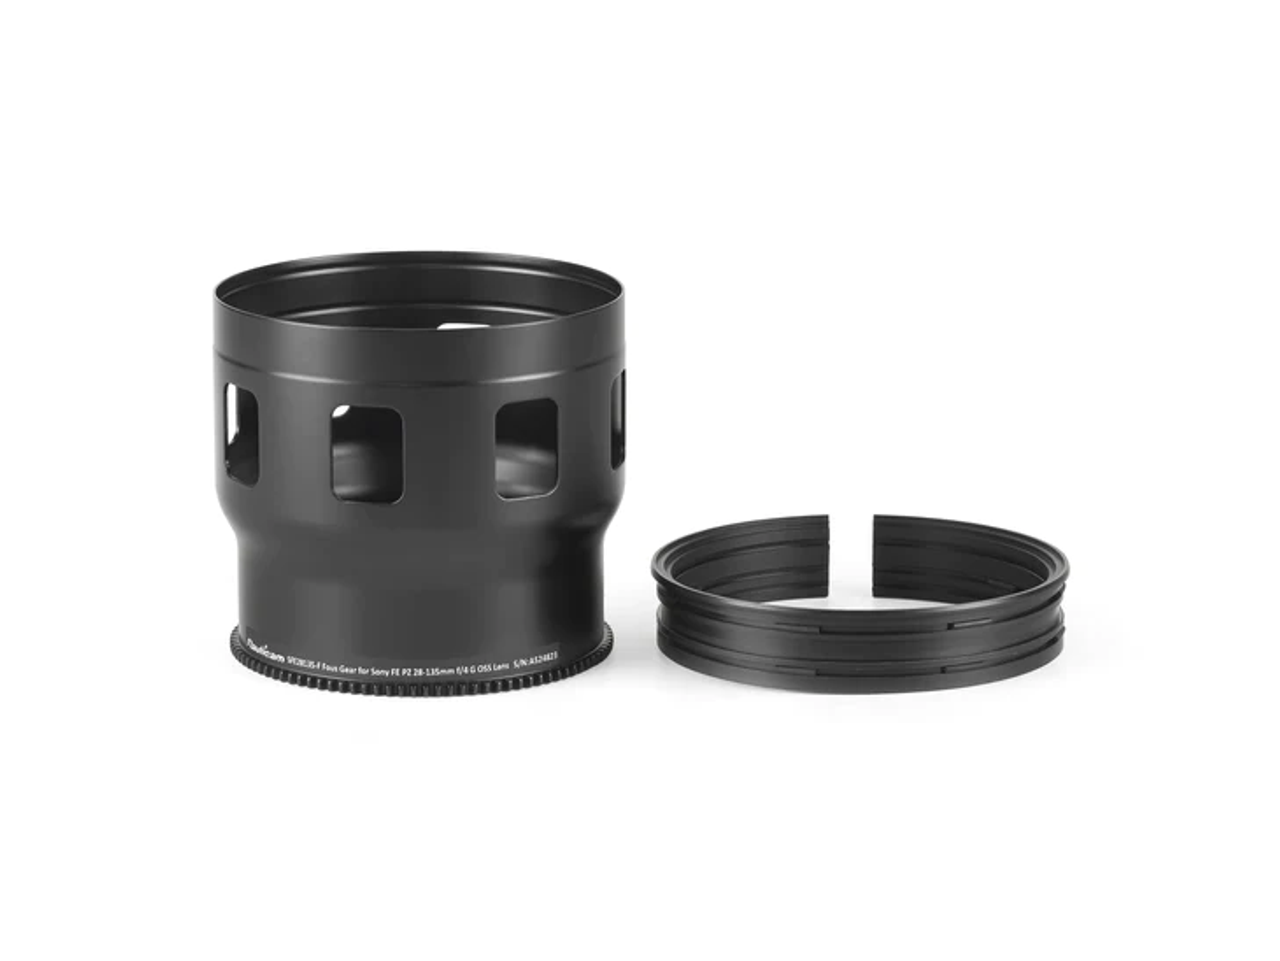 37170 SFE28135-F Foom Gear for Sony FE PZ 28-135mm f/4 G OSS Lens